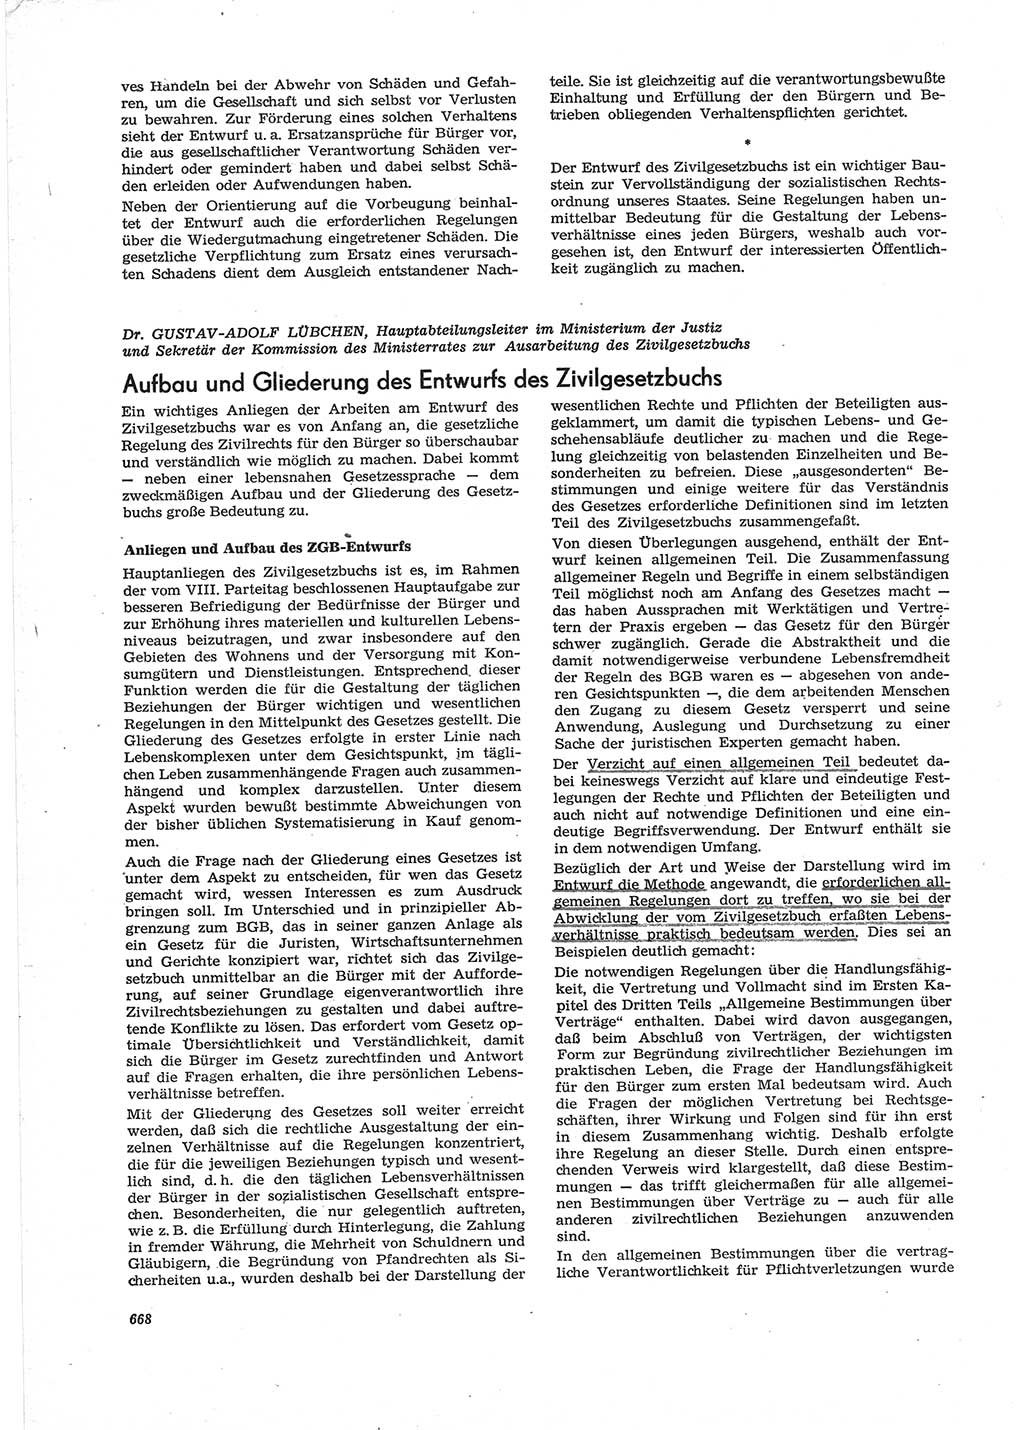 Neue Justiz (NJ), Zeitschrift für Recht und Rechtswissenschaft [Deutsche Demokratische Republik (DDR)], 28. Jahrgang 1974, Seite 668 (NJ DDR 1974, S. 668)